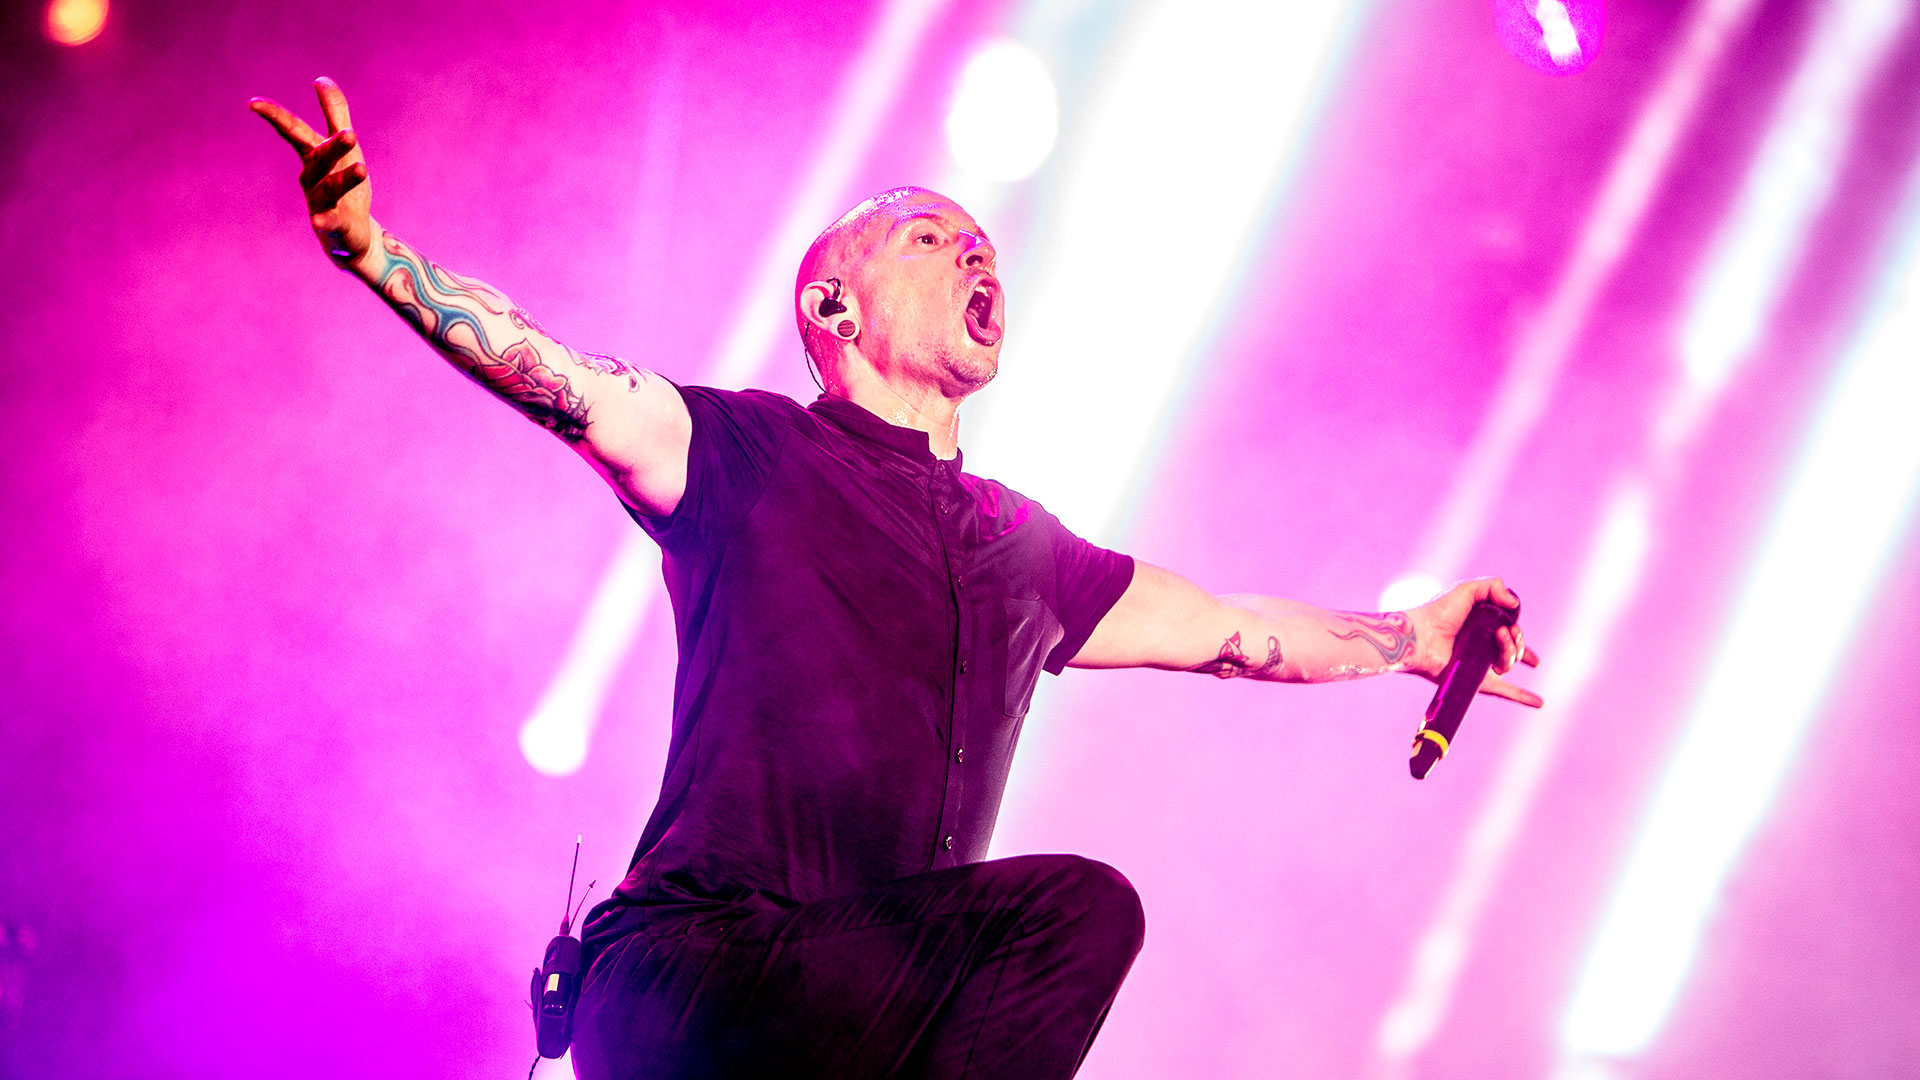 La depresión a través de la voz del líder de Linkin Park, Chester Bennington